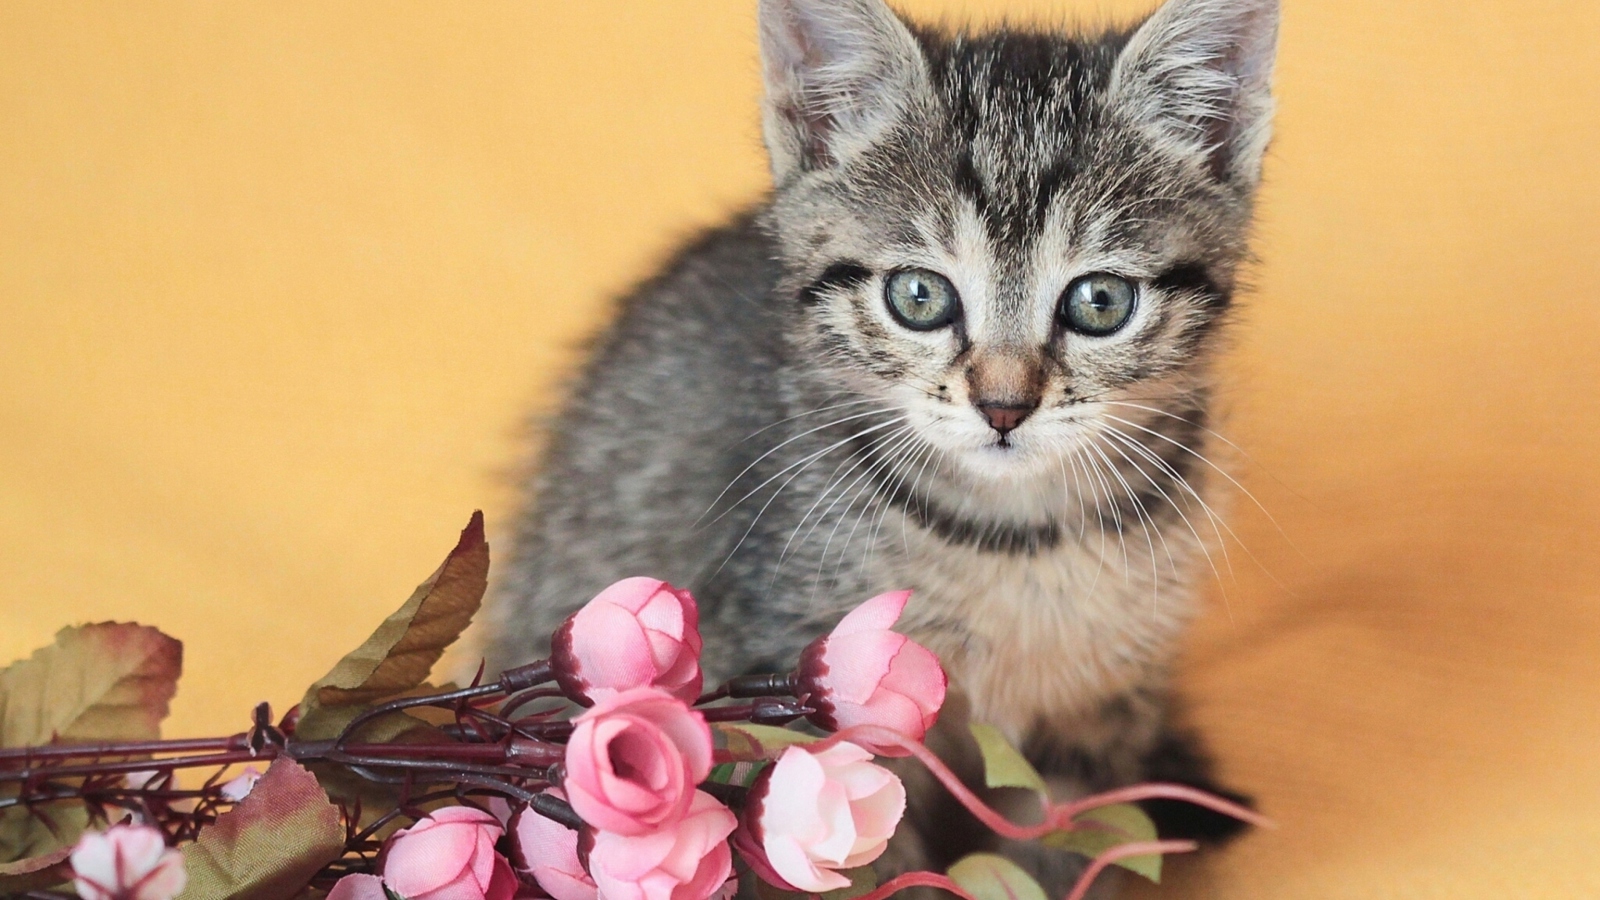 Sfondi Cute Grey Kitten And Pink Flowers 1600x900